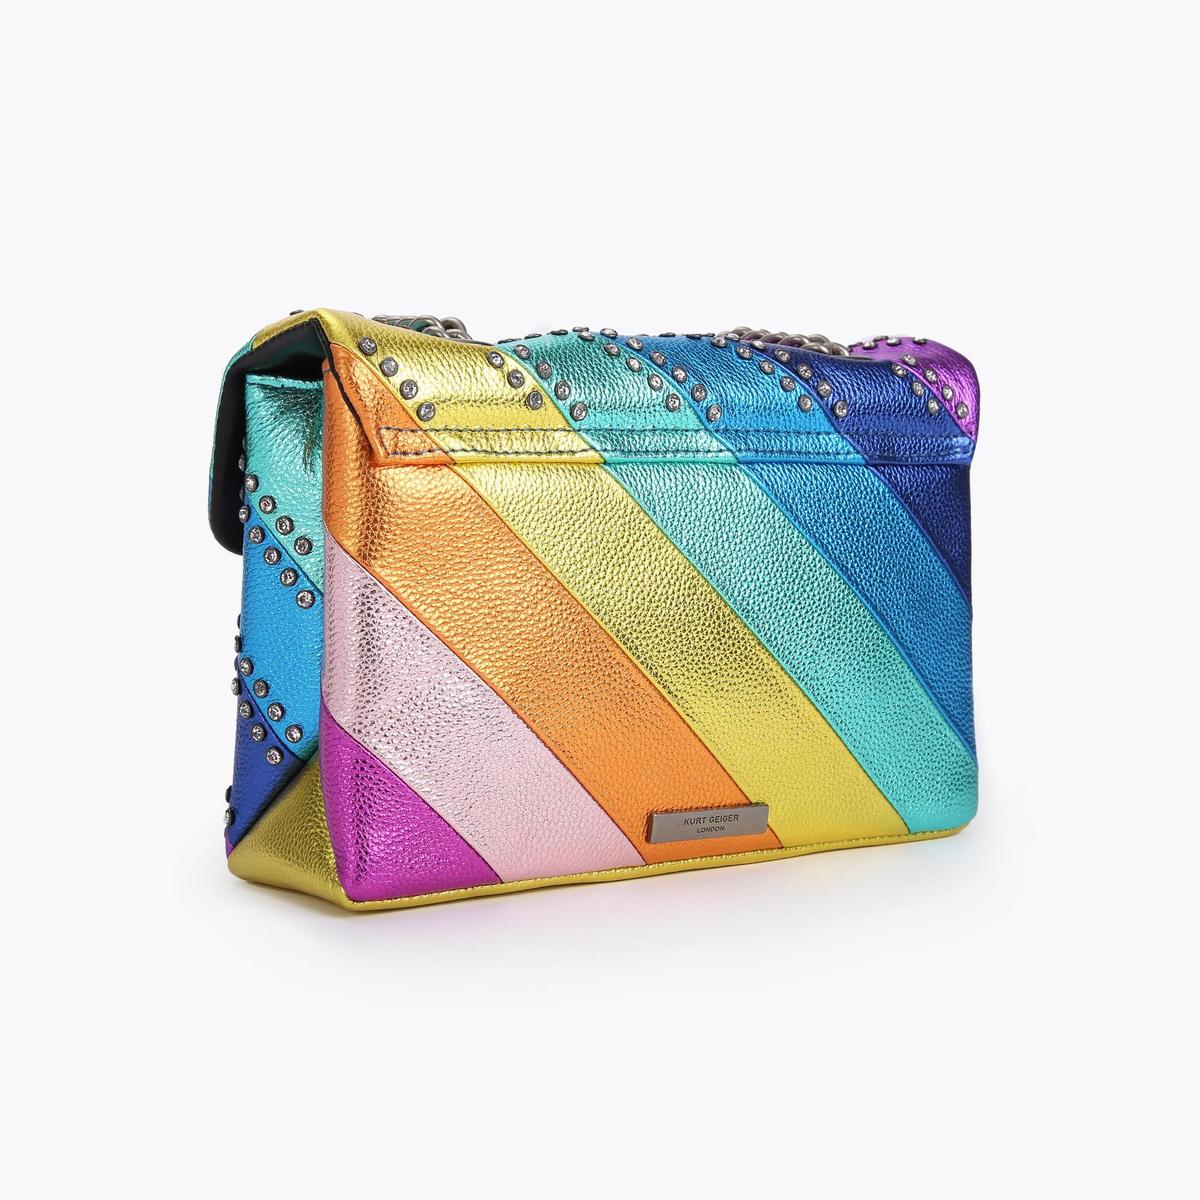 CRYSTAL KENSINGTON BAG Rainbow Stripe Embellished Shoulder Bag by KURT